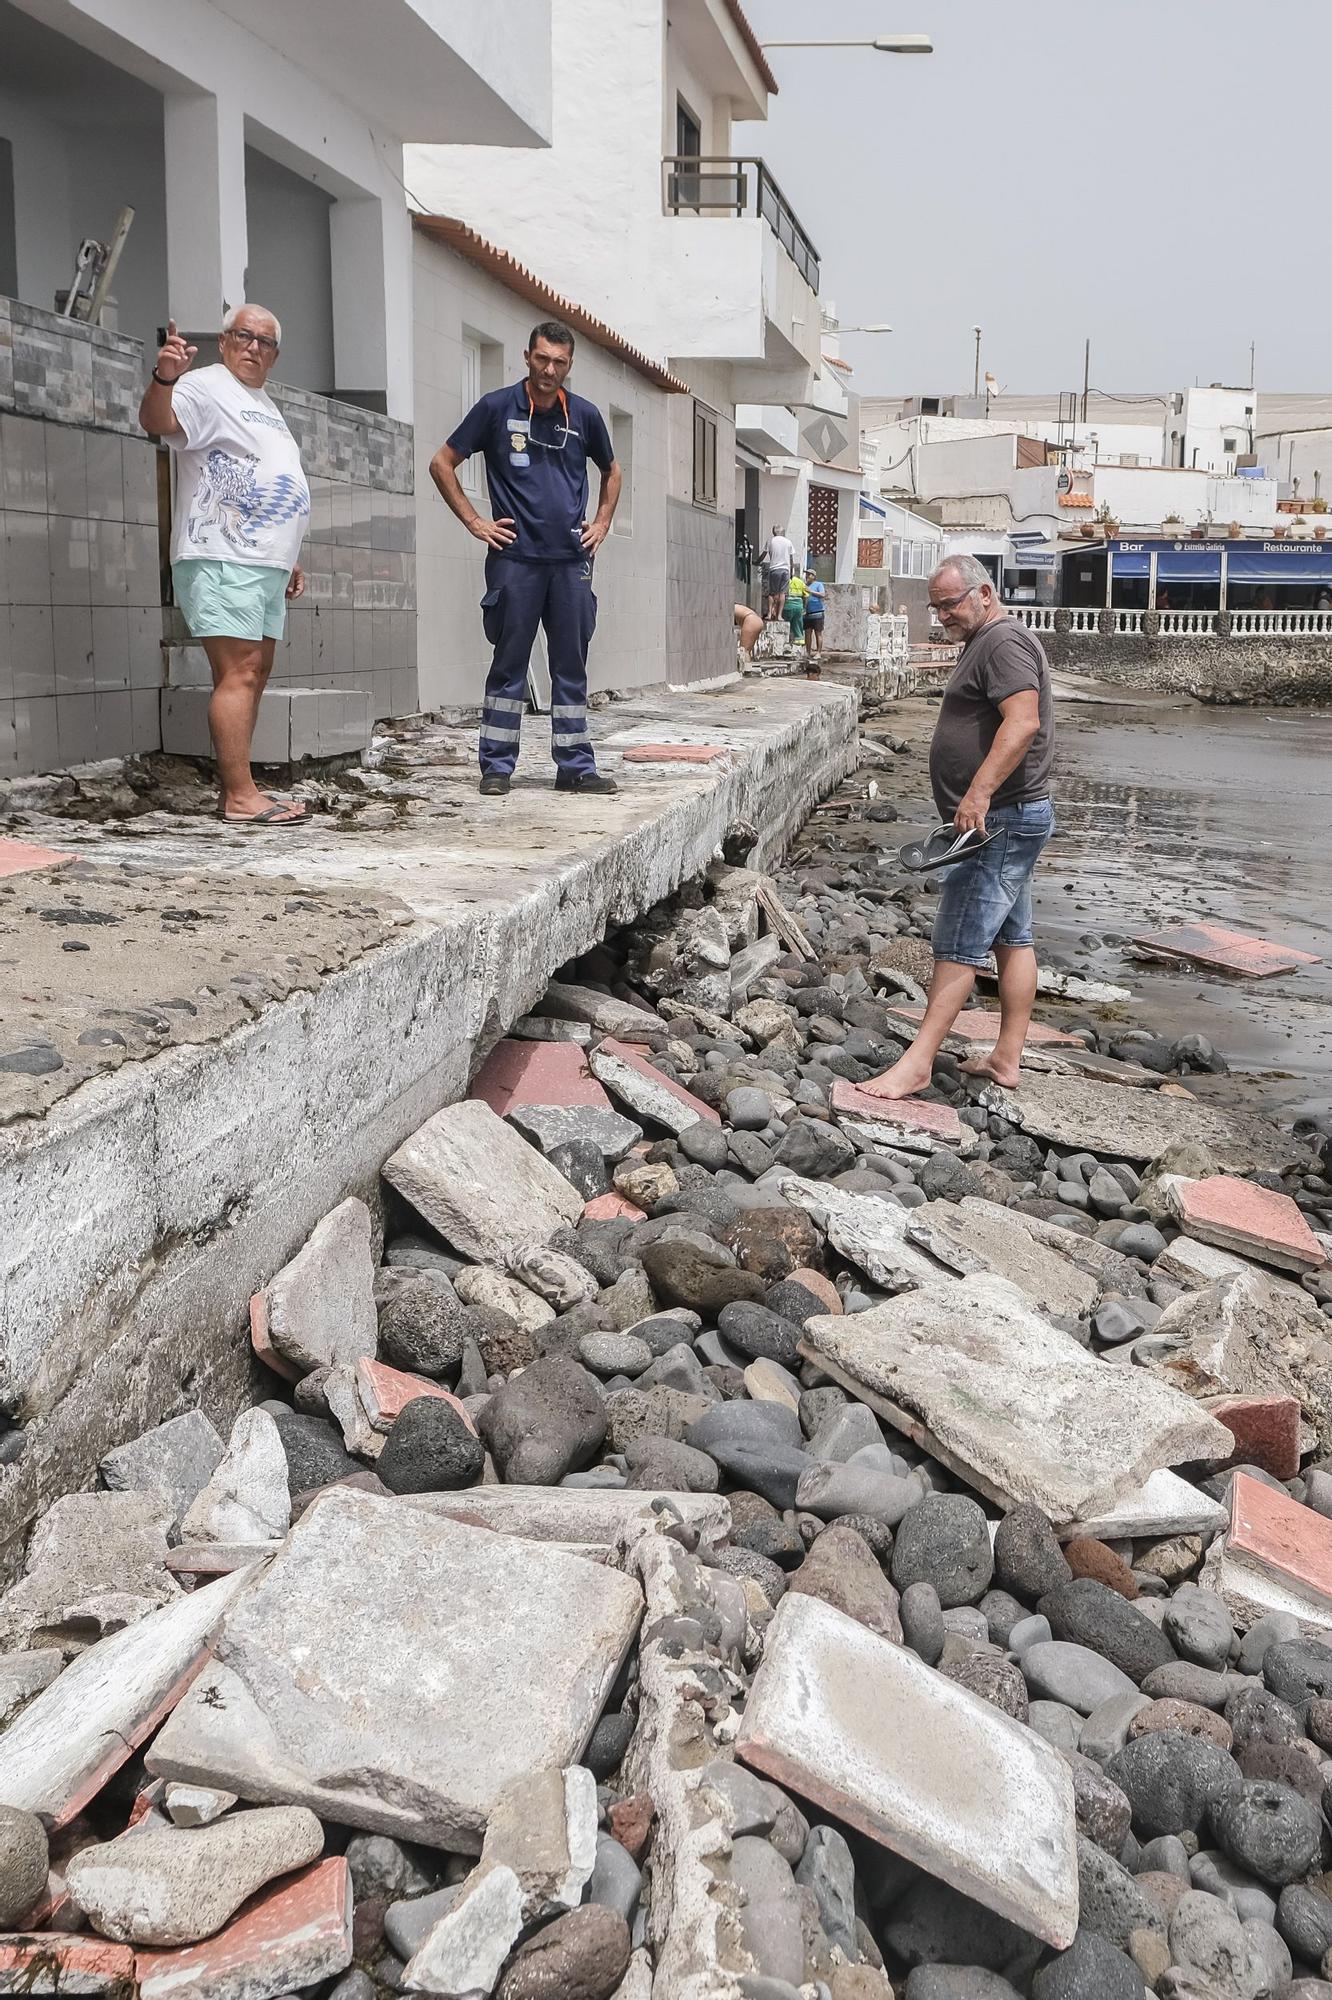 Destrozos del temporal de mar en la costa de Telde